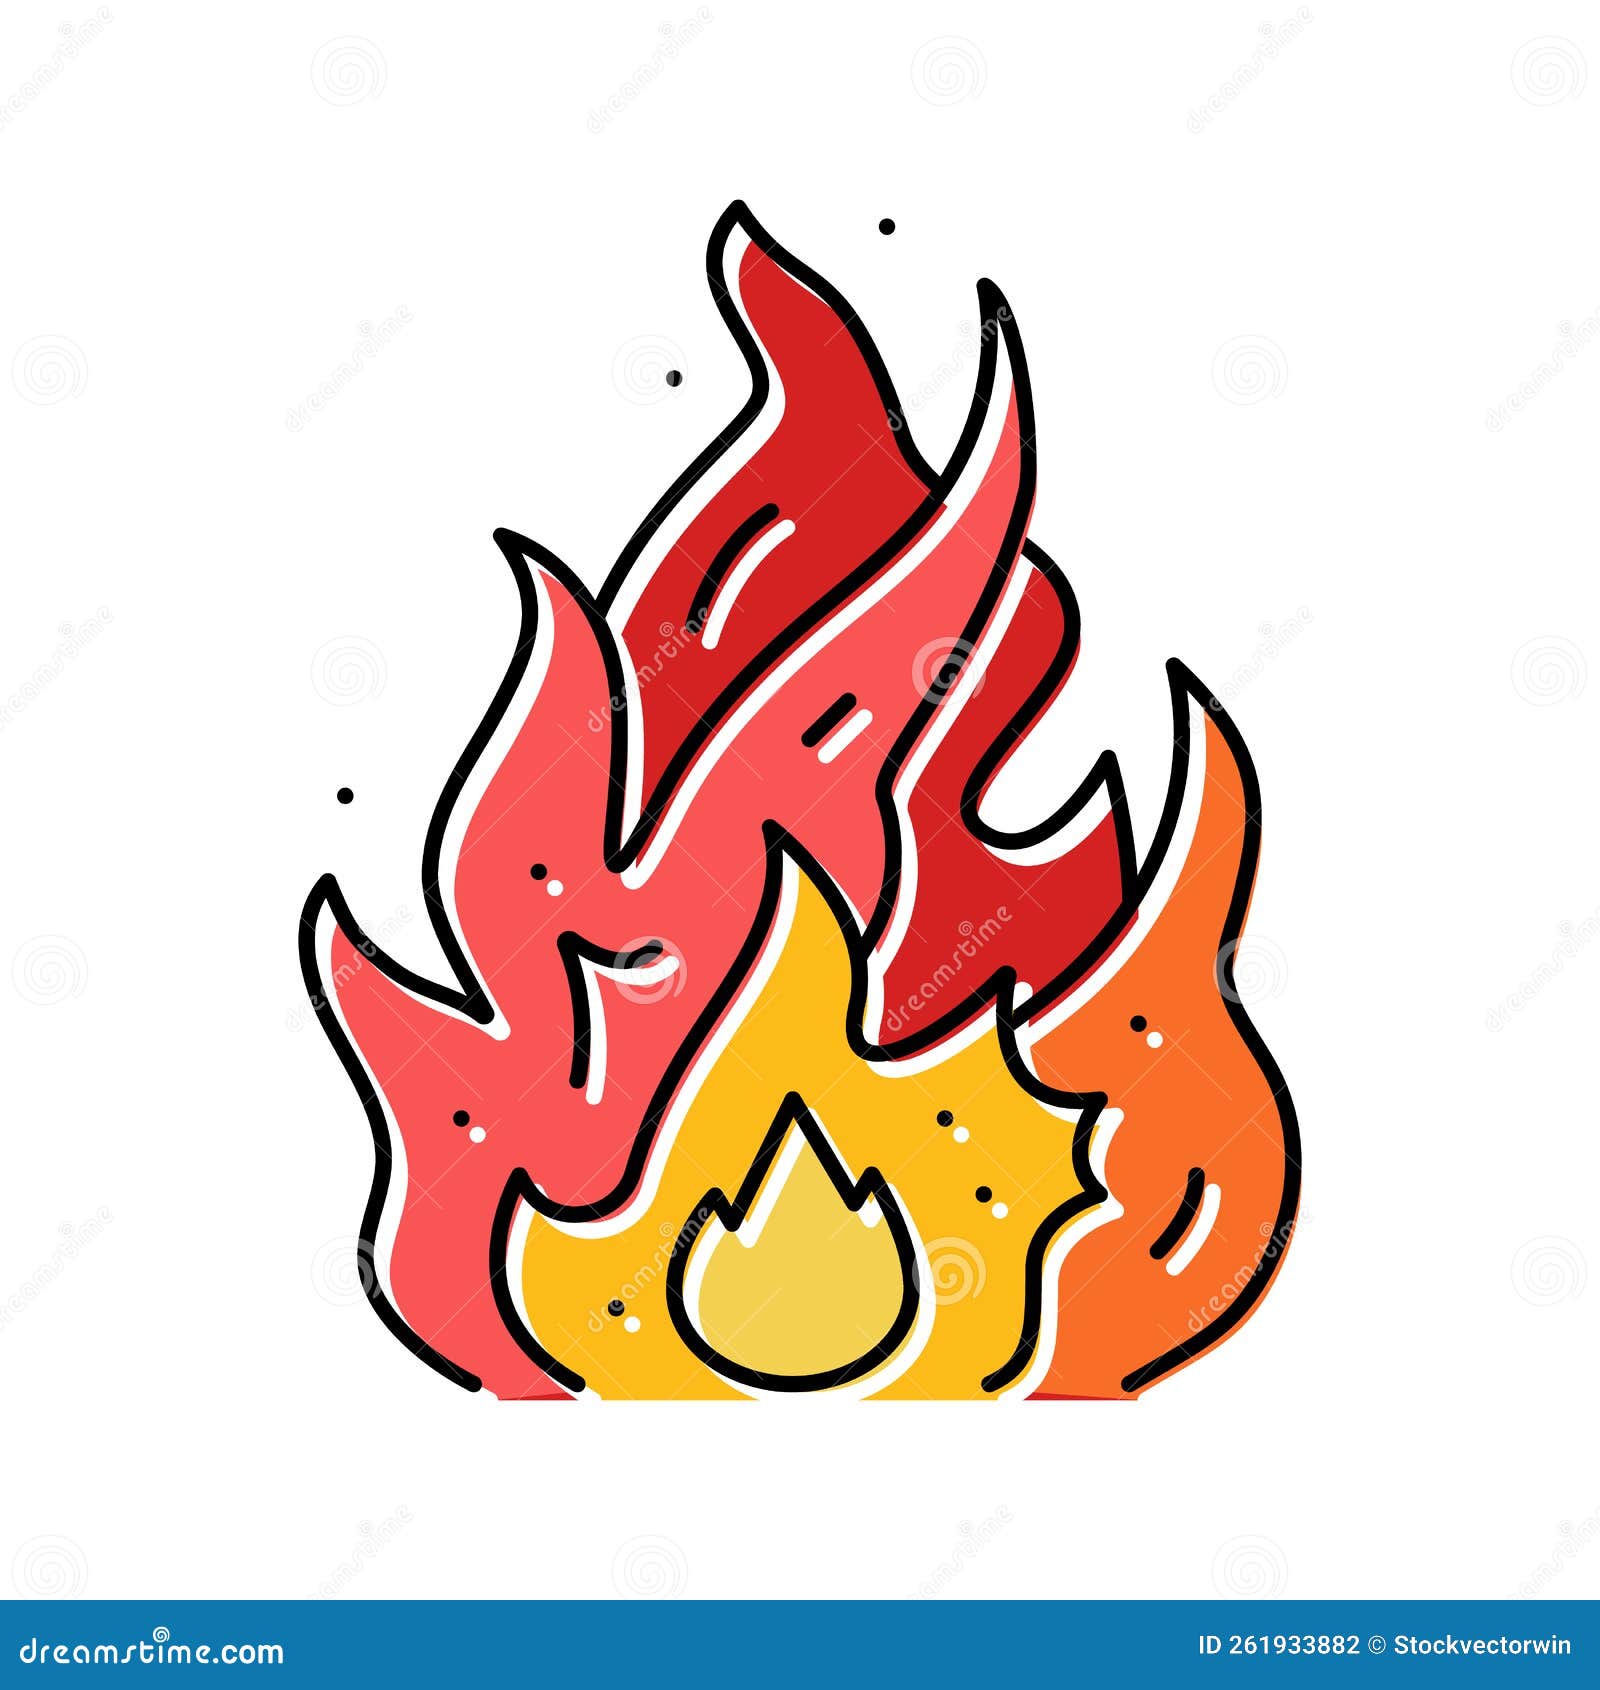 Estilo Simples Do ícone De Fogo Ilustração do Vetor - Ilustração de  inferno, brilhante: 222153111